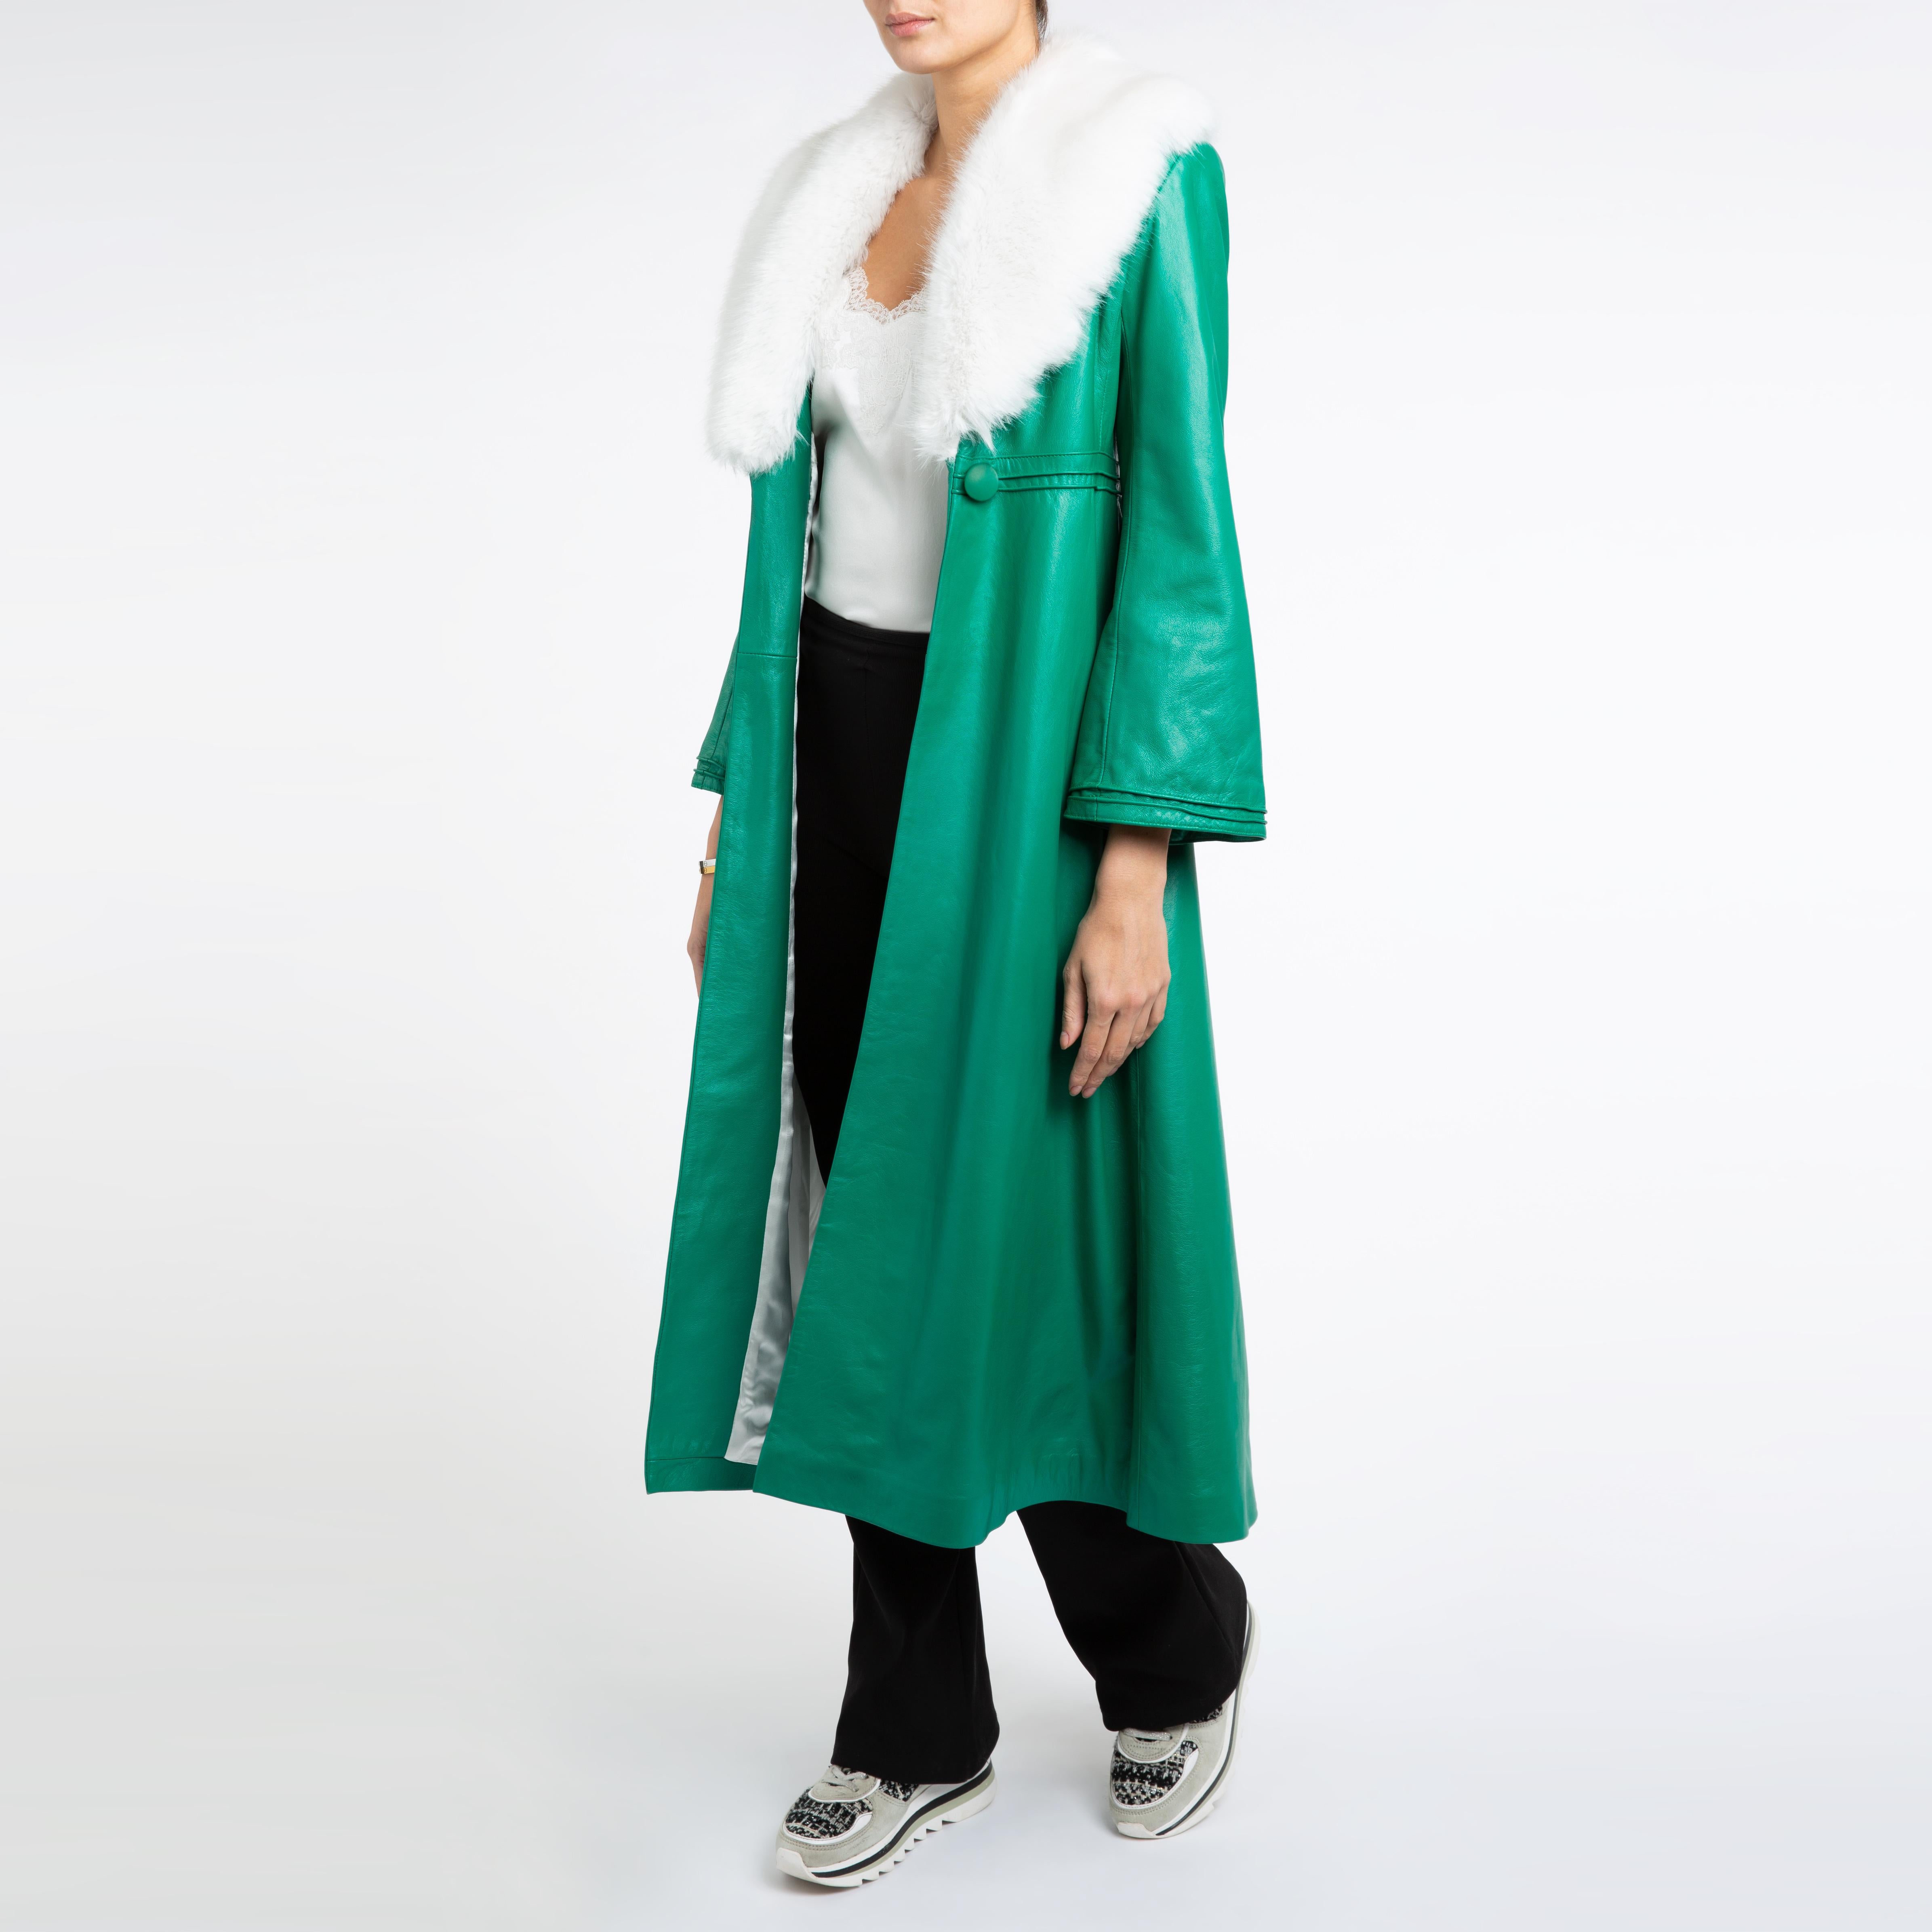 Verheyen London Edward Leather Coat in Green & White Faux Fur - Size 12 UK  For Sale 4